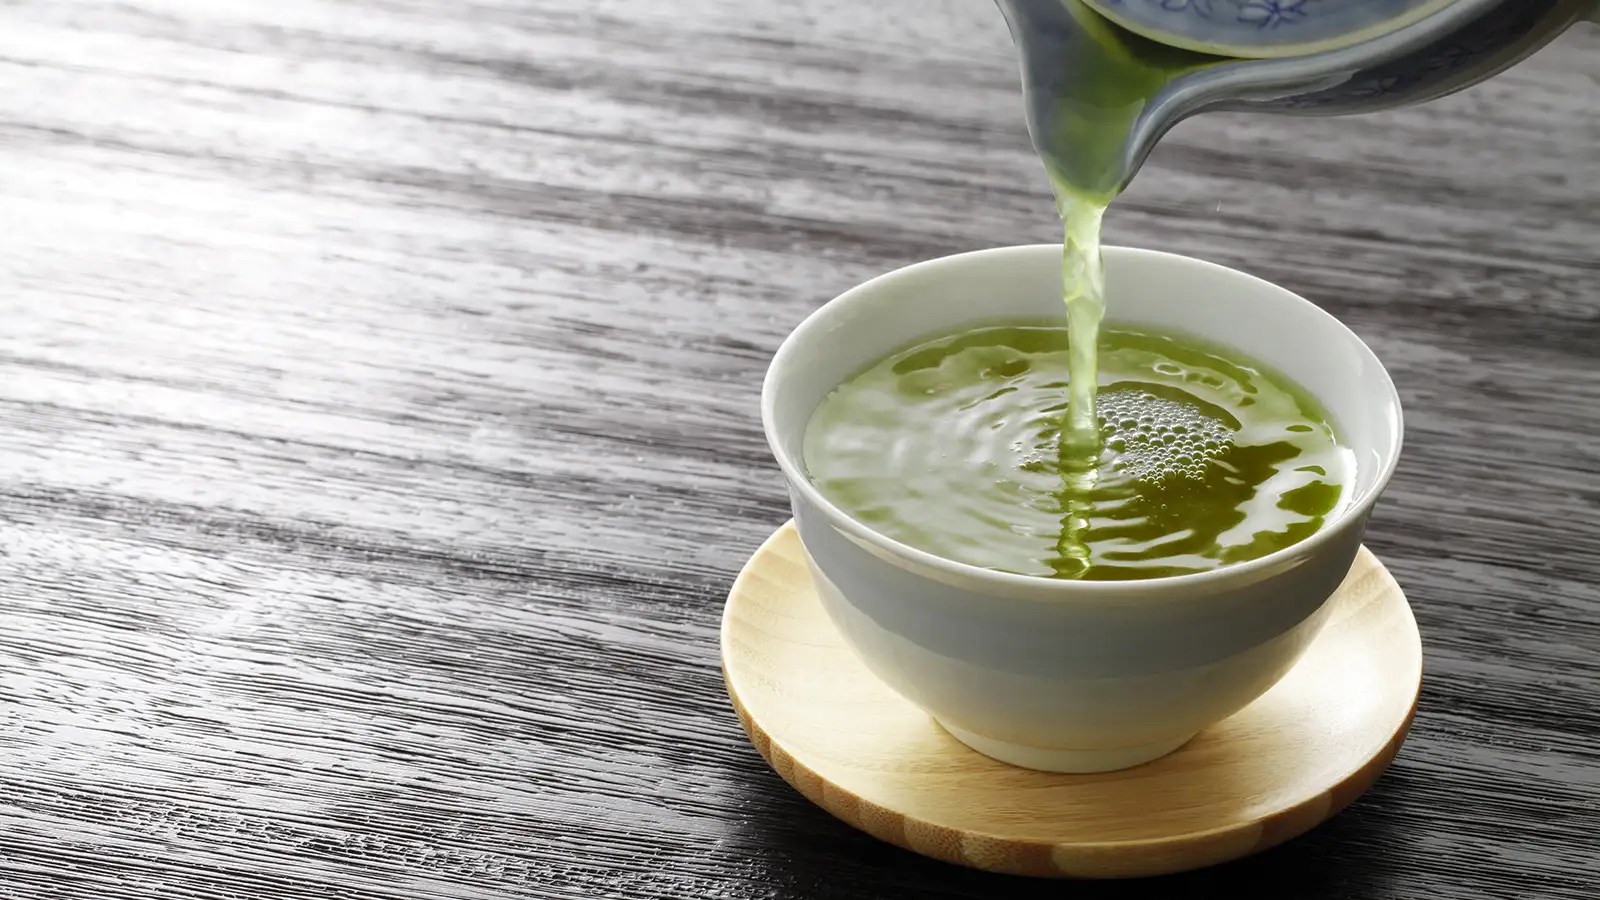 ふくよかな甘み、豊かなうま味 -プレミアム 東京狭山茶